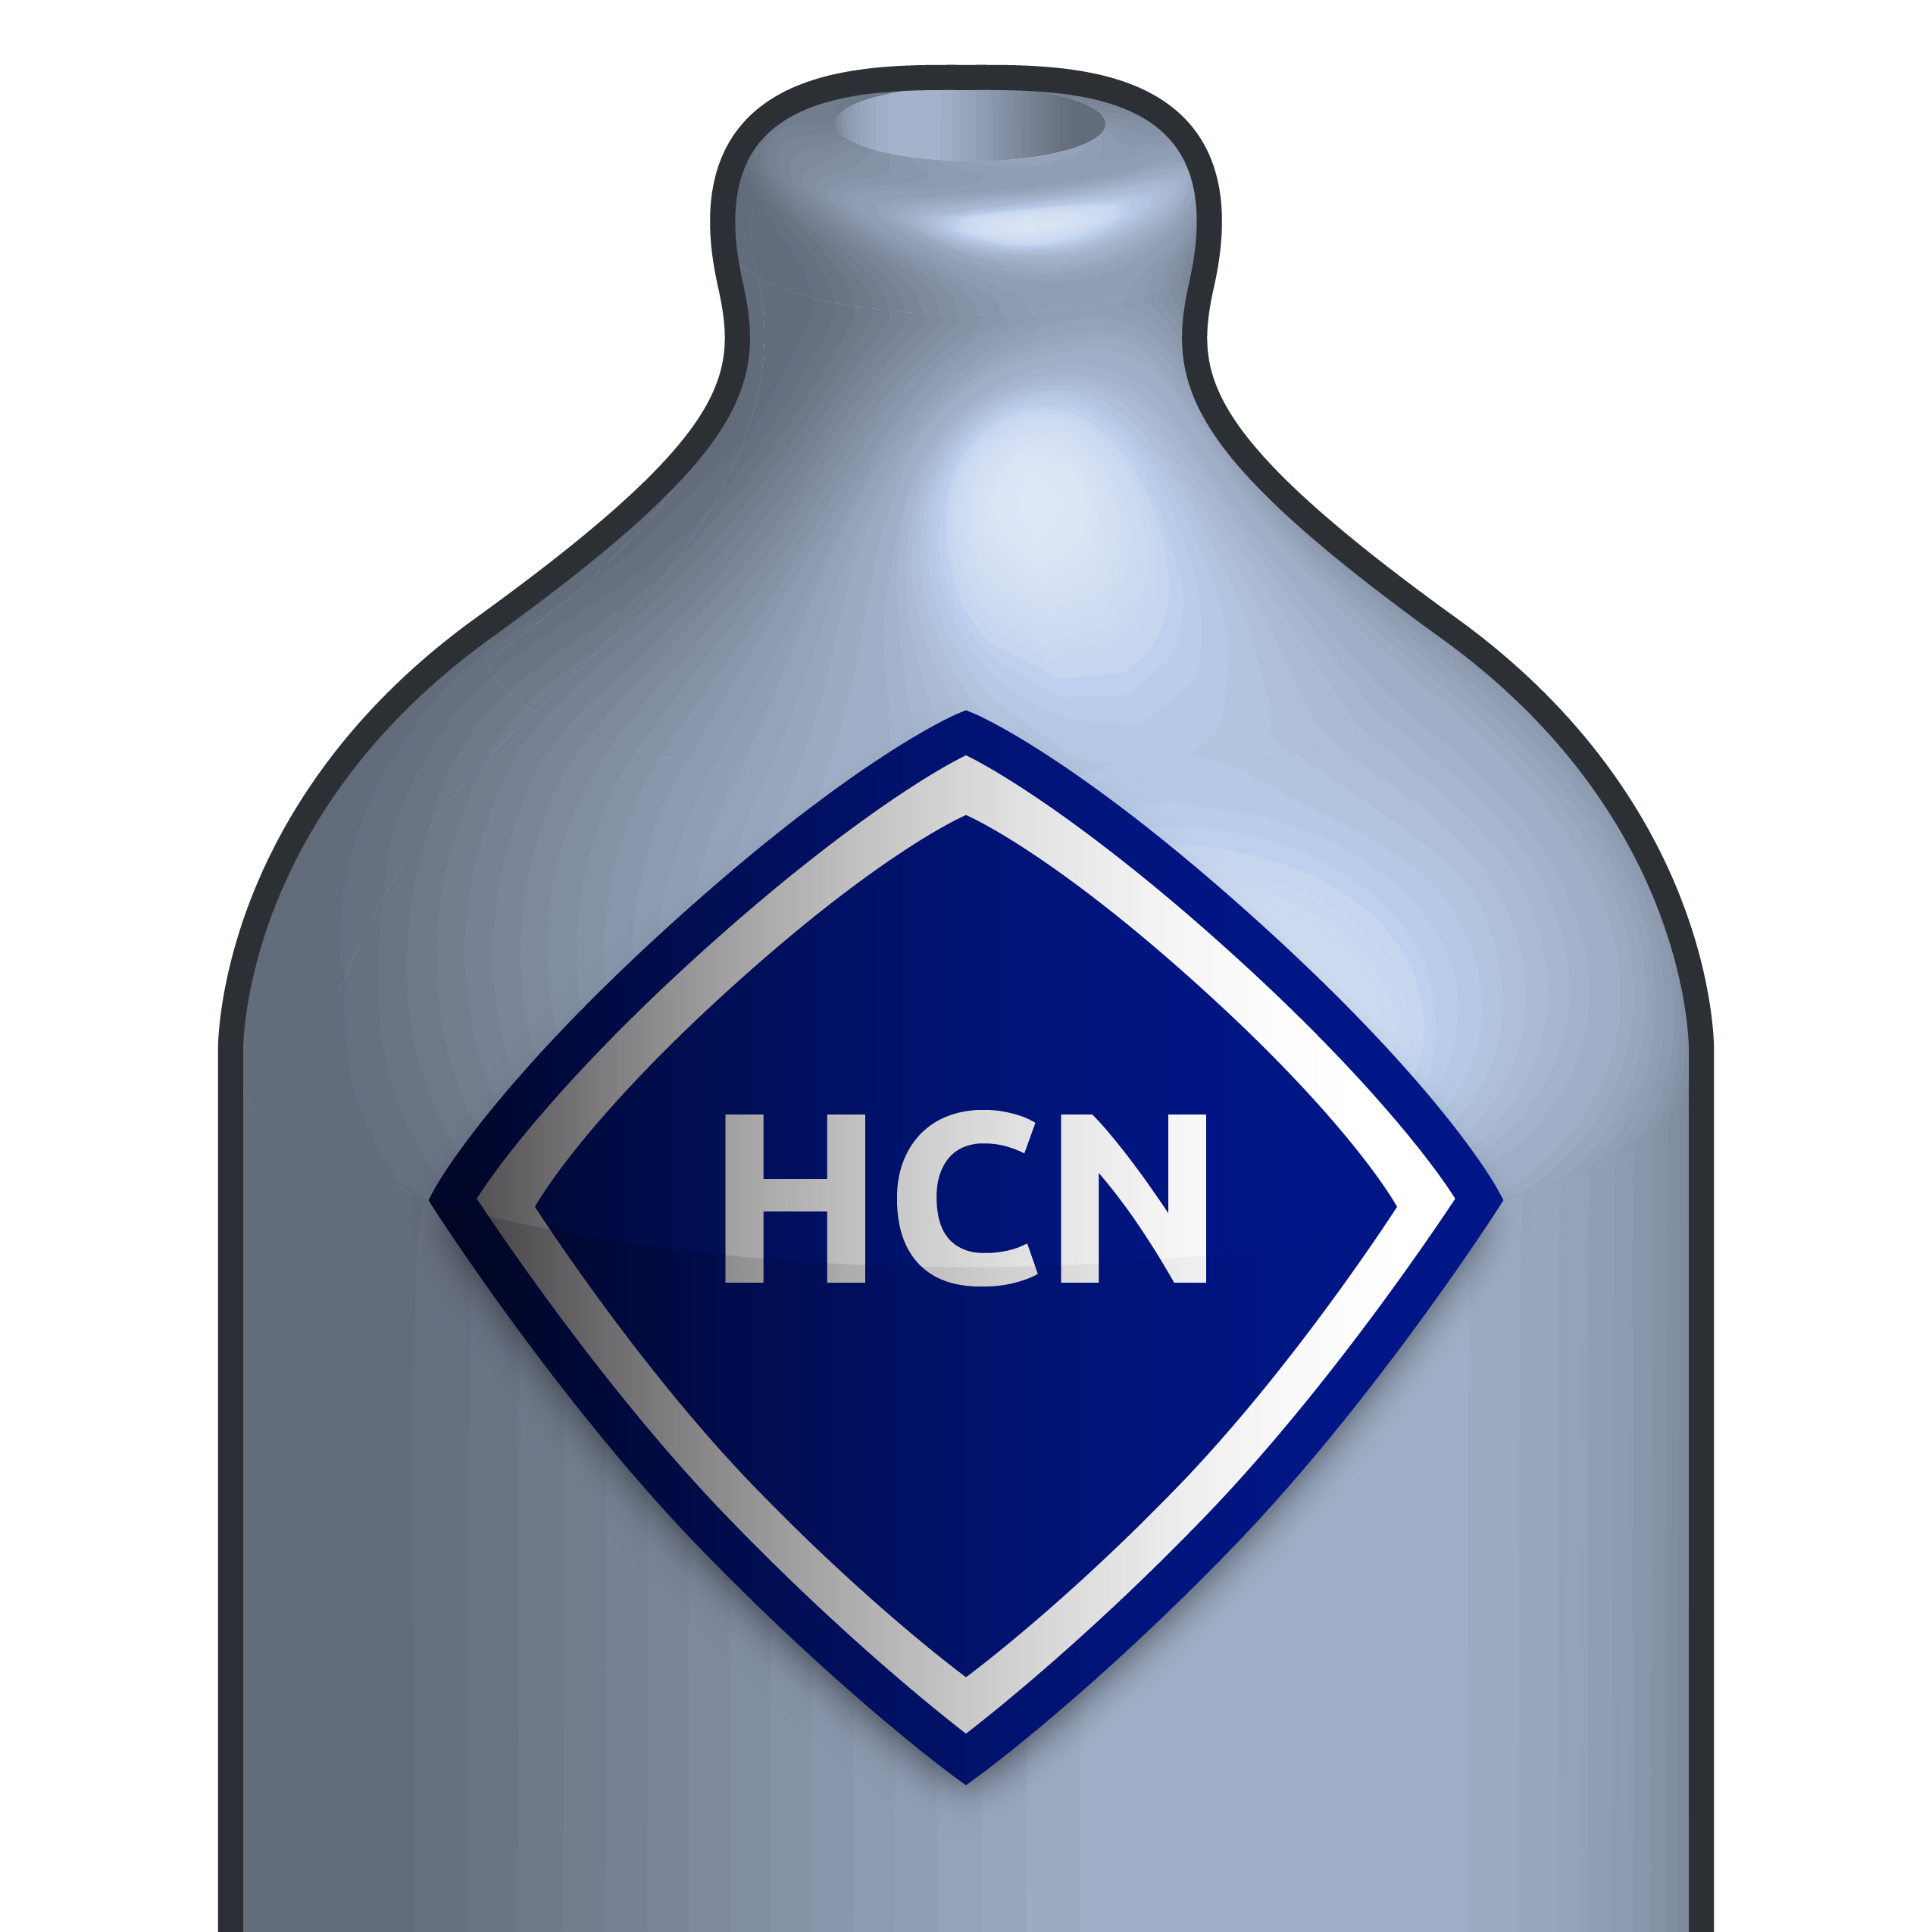 Hydrogen Cyanide